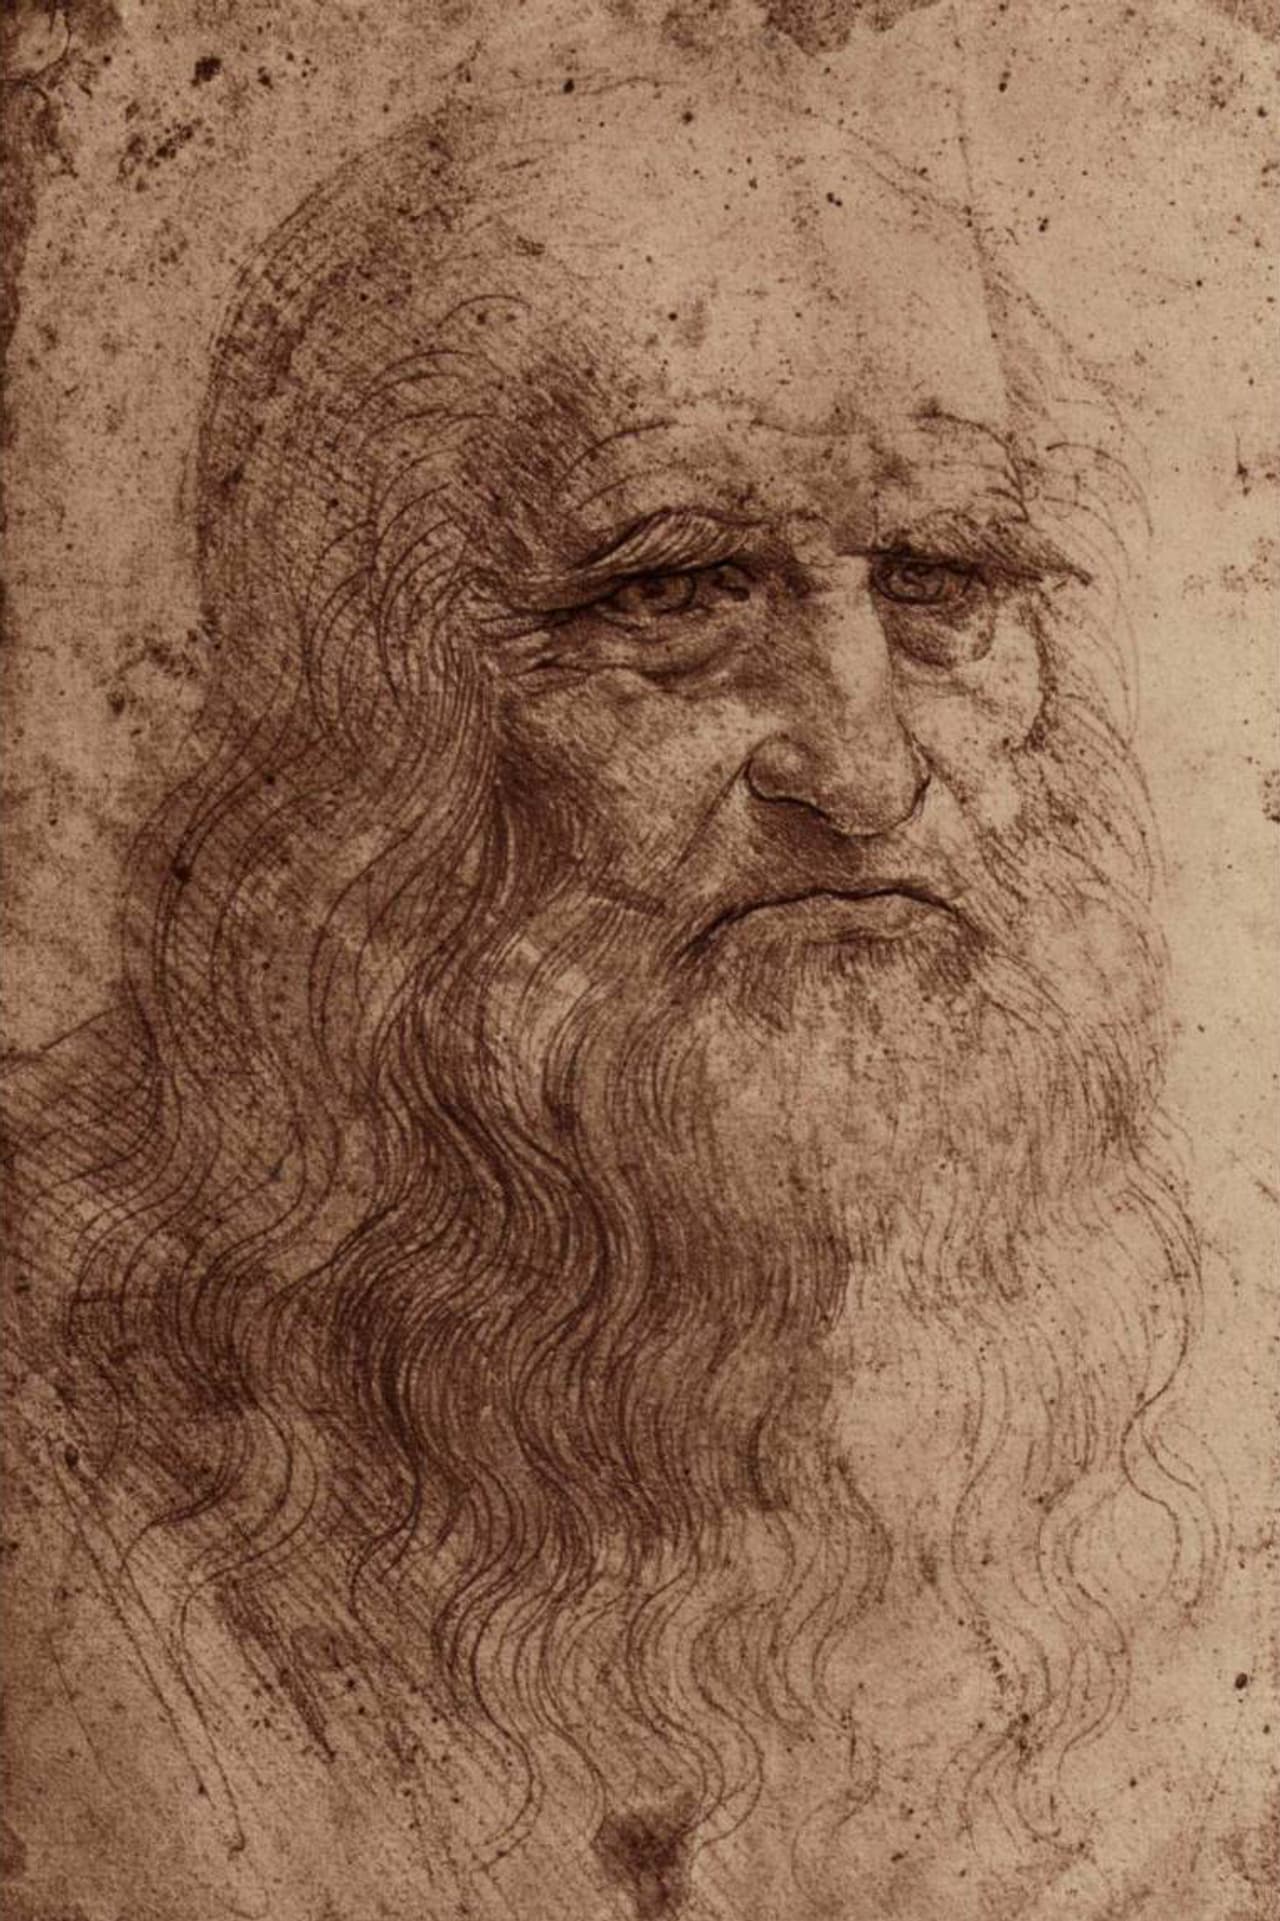 Гении возрождения. Леонардо да Винчи автопортрет 1512. Леонардоида Винчи автопортрет. Леонардо да Винчи портрет. Леонардо да Винчи Автопорт.